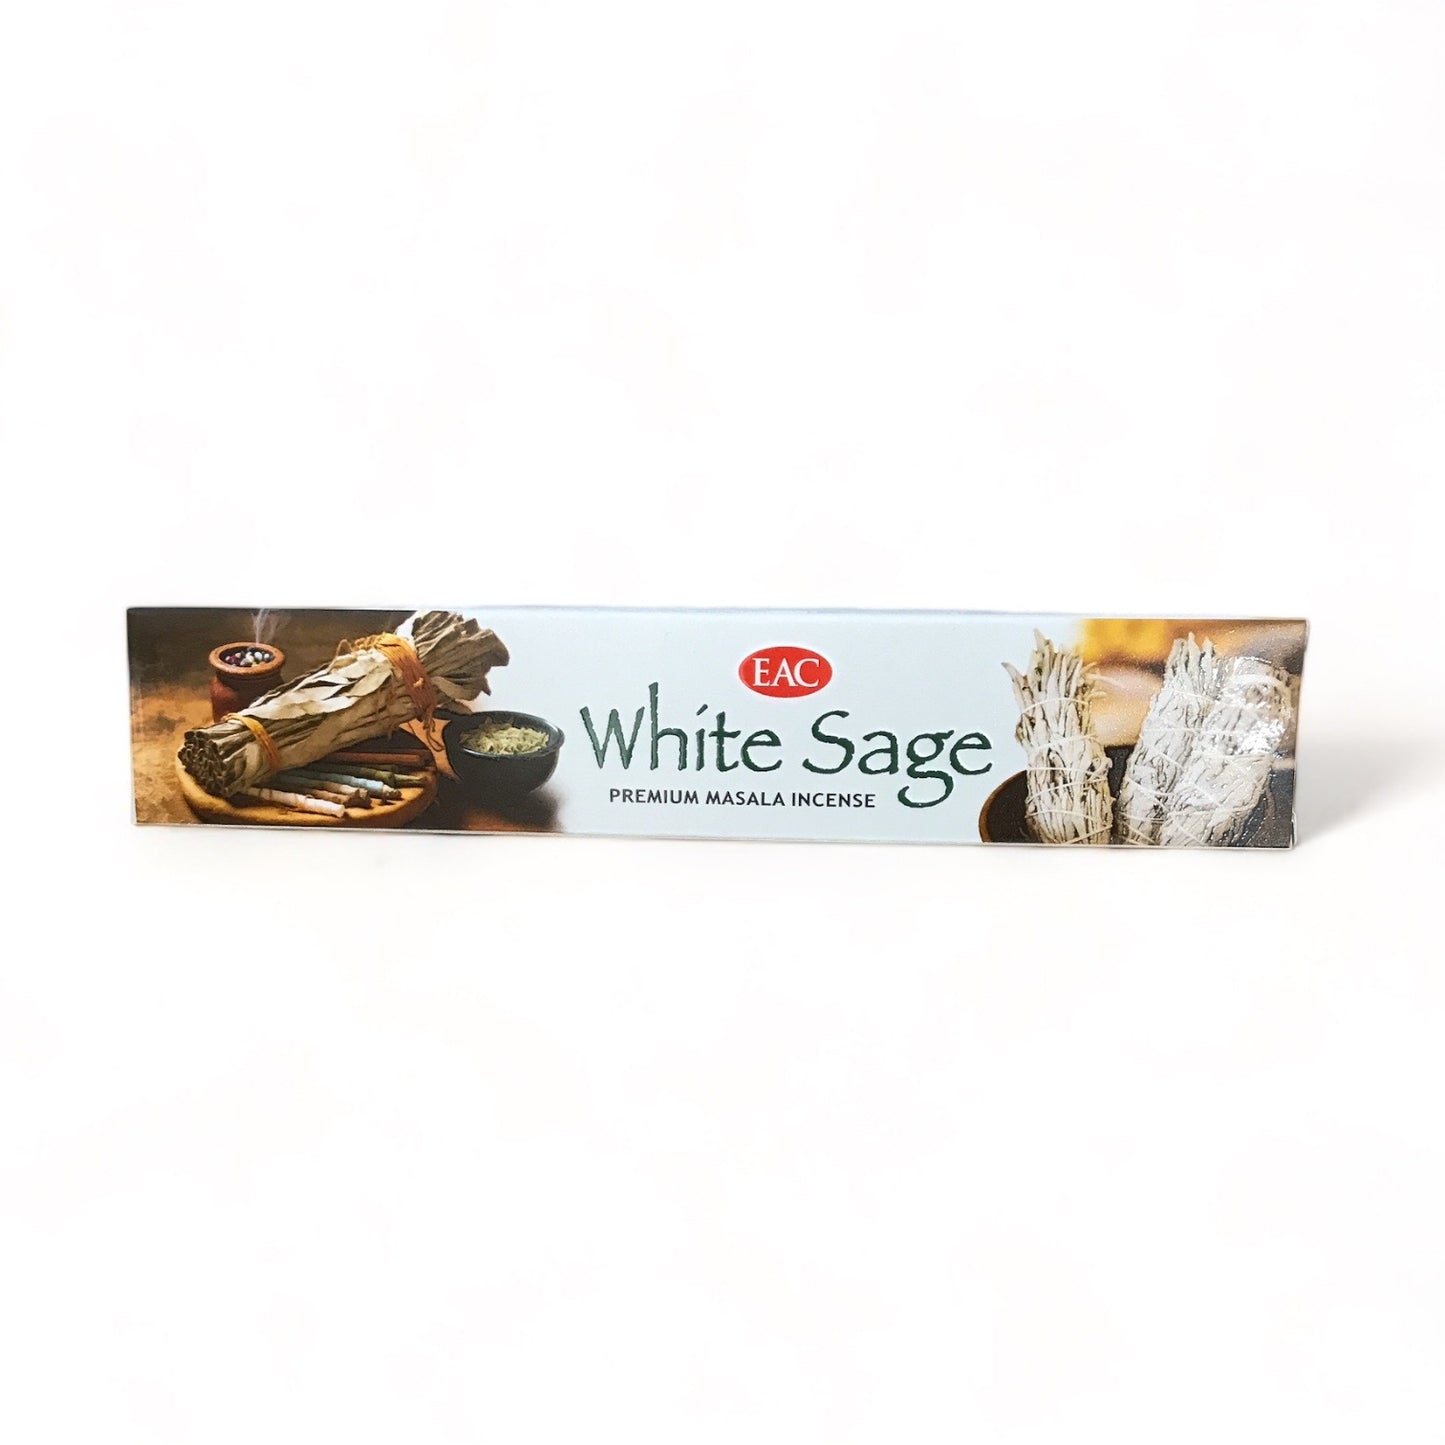 White Sage Incense - EAC